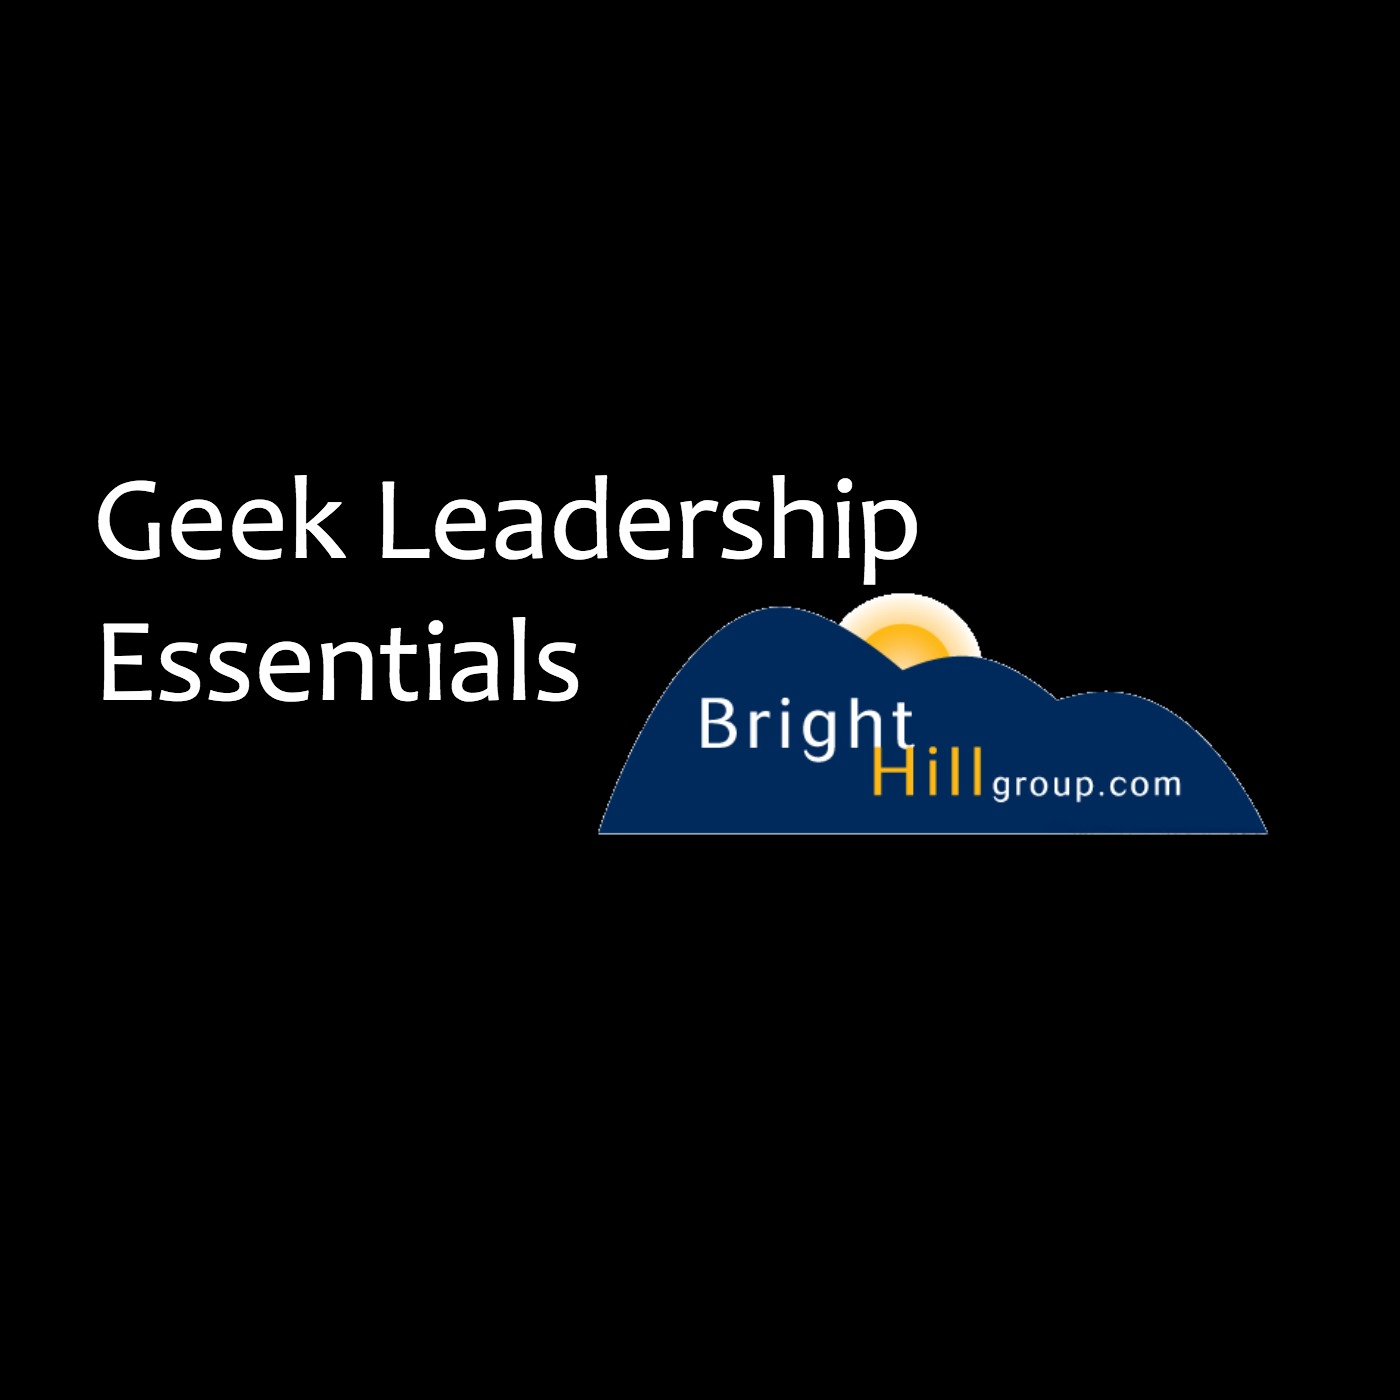 Geek Leadership Essentials